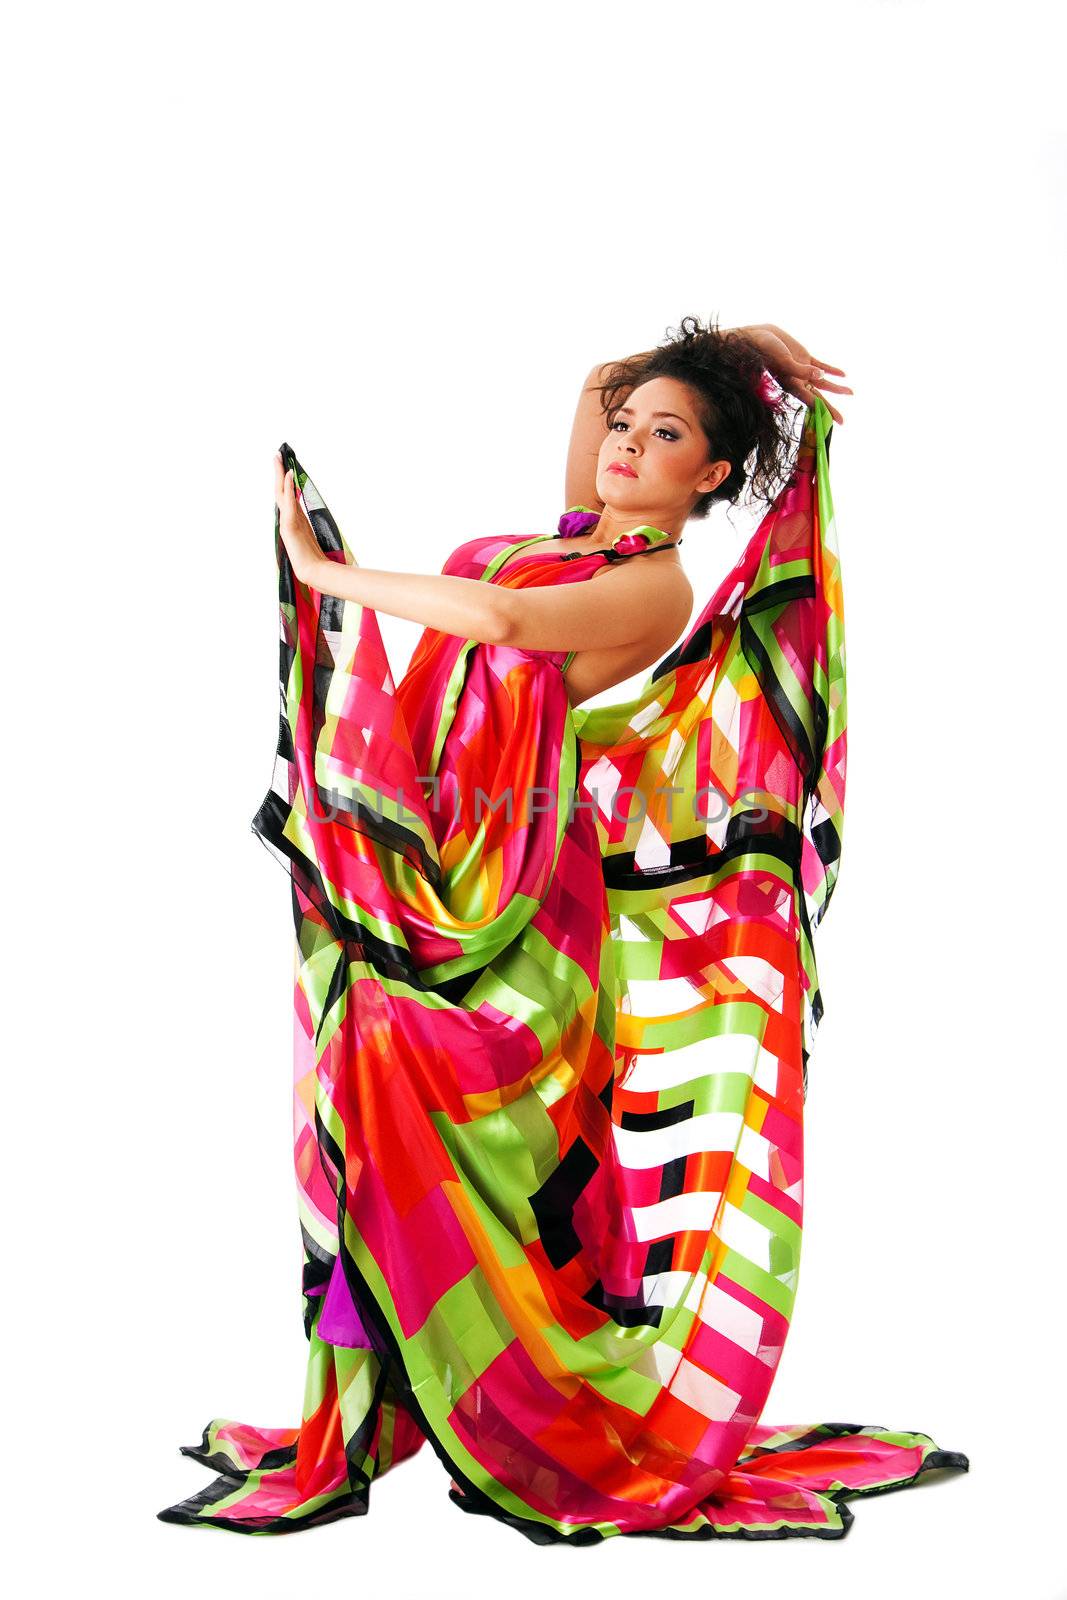 Beautiful Caucasian Hispanic Latina fashion model woman wearing colorful dress, isolated.